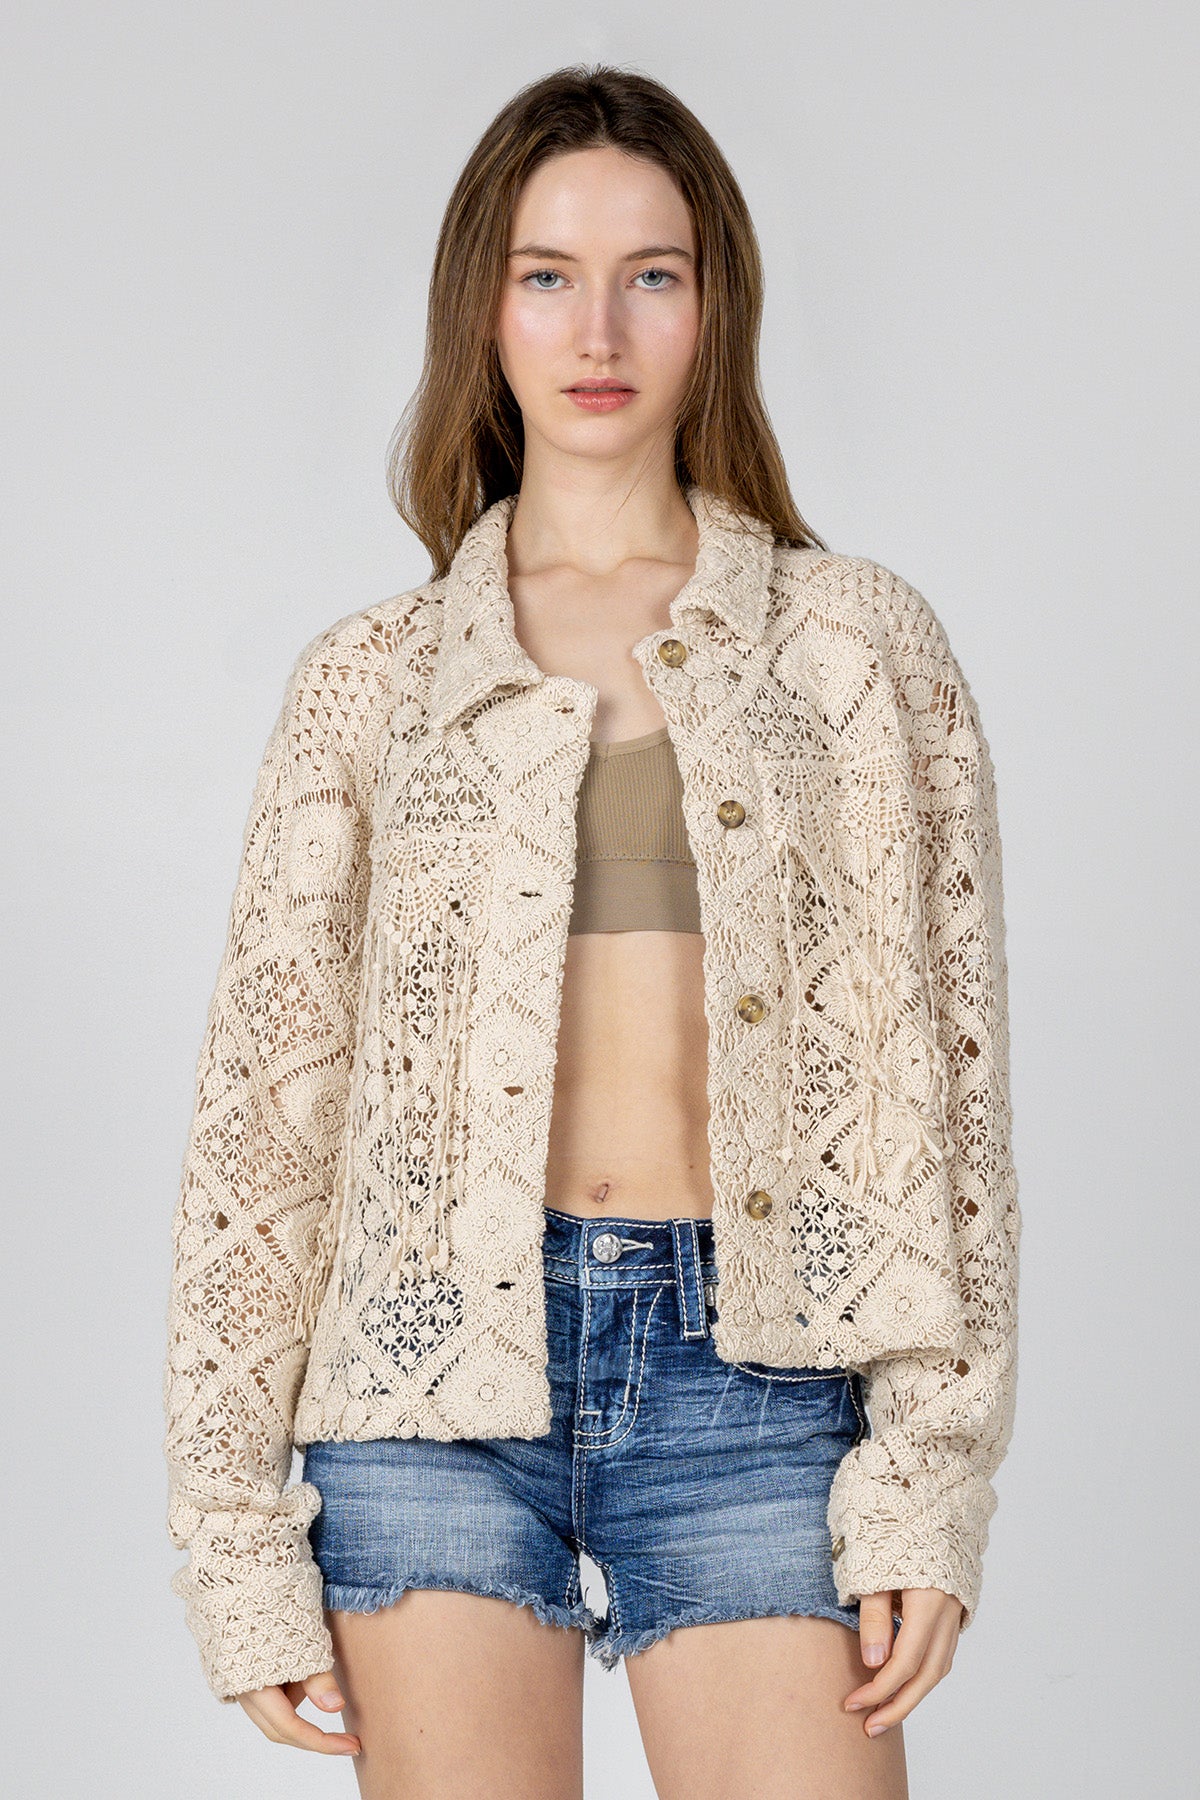 Macrame Crochet Jacket